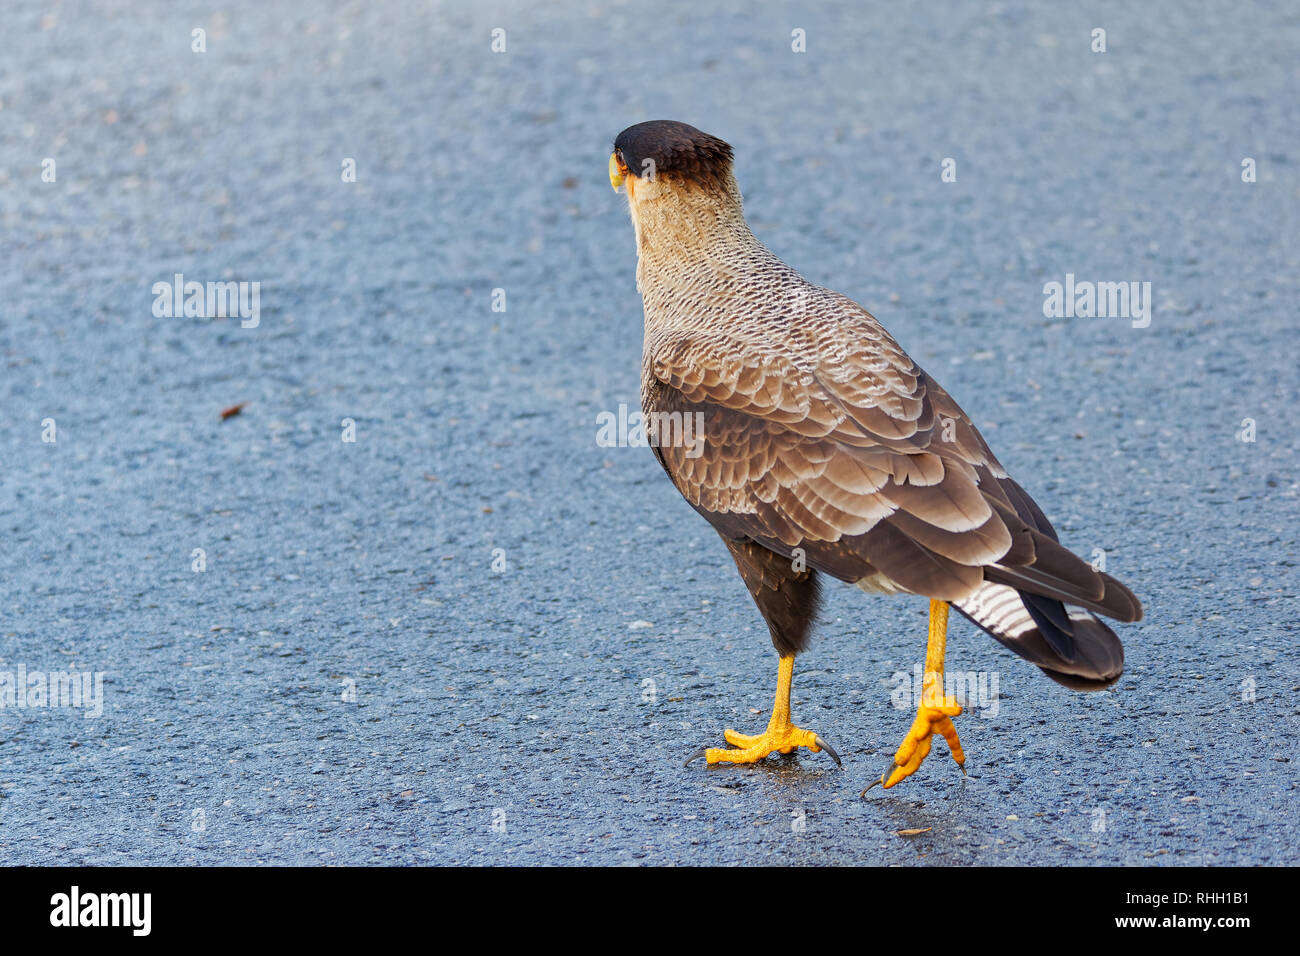 Retrato de ave carroñera, conocido como caracara, carancho o traro. Sobre el asfalto del Parque Nacional Vicente Pérez Rosales. Foto de stock